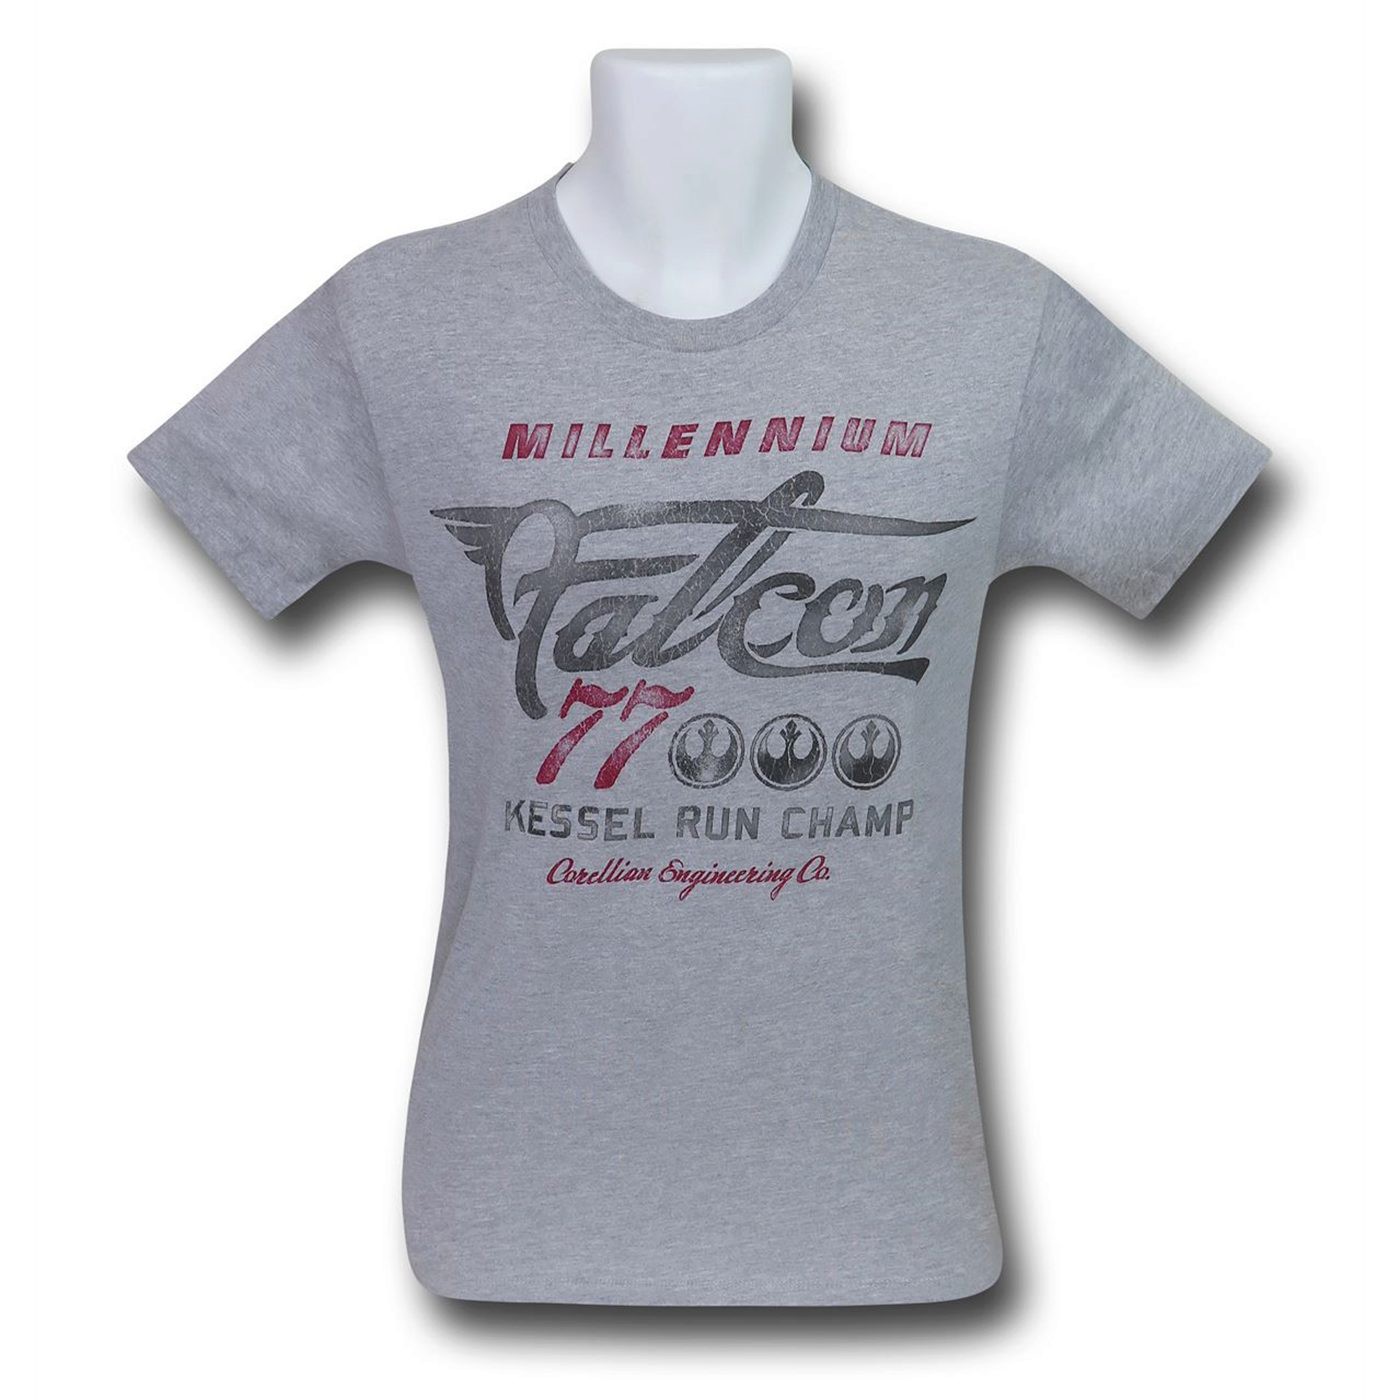 Star Wars Millennium Falcon Vintage Men's T-Shirt